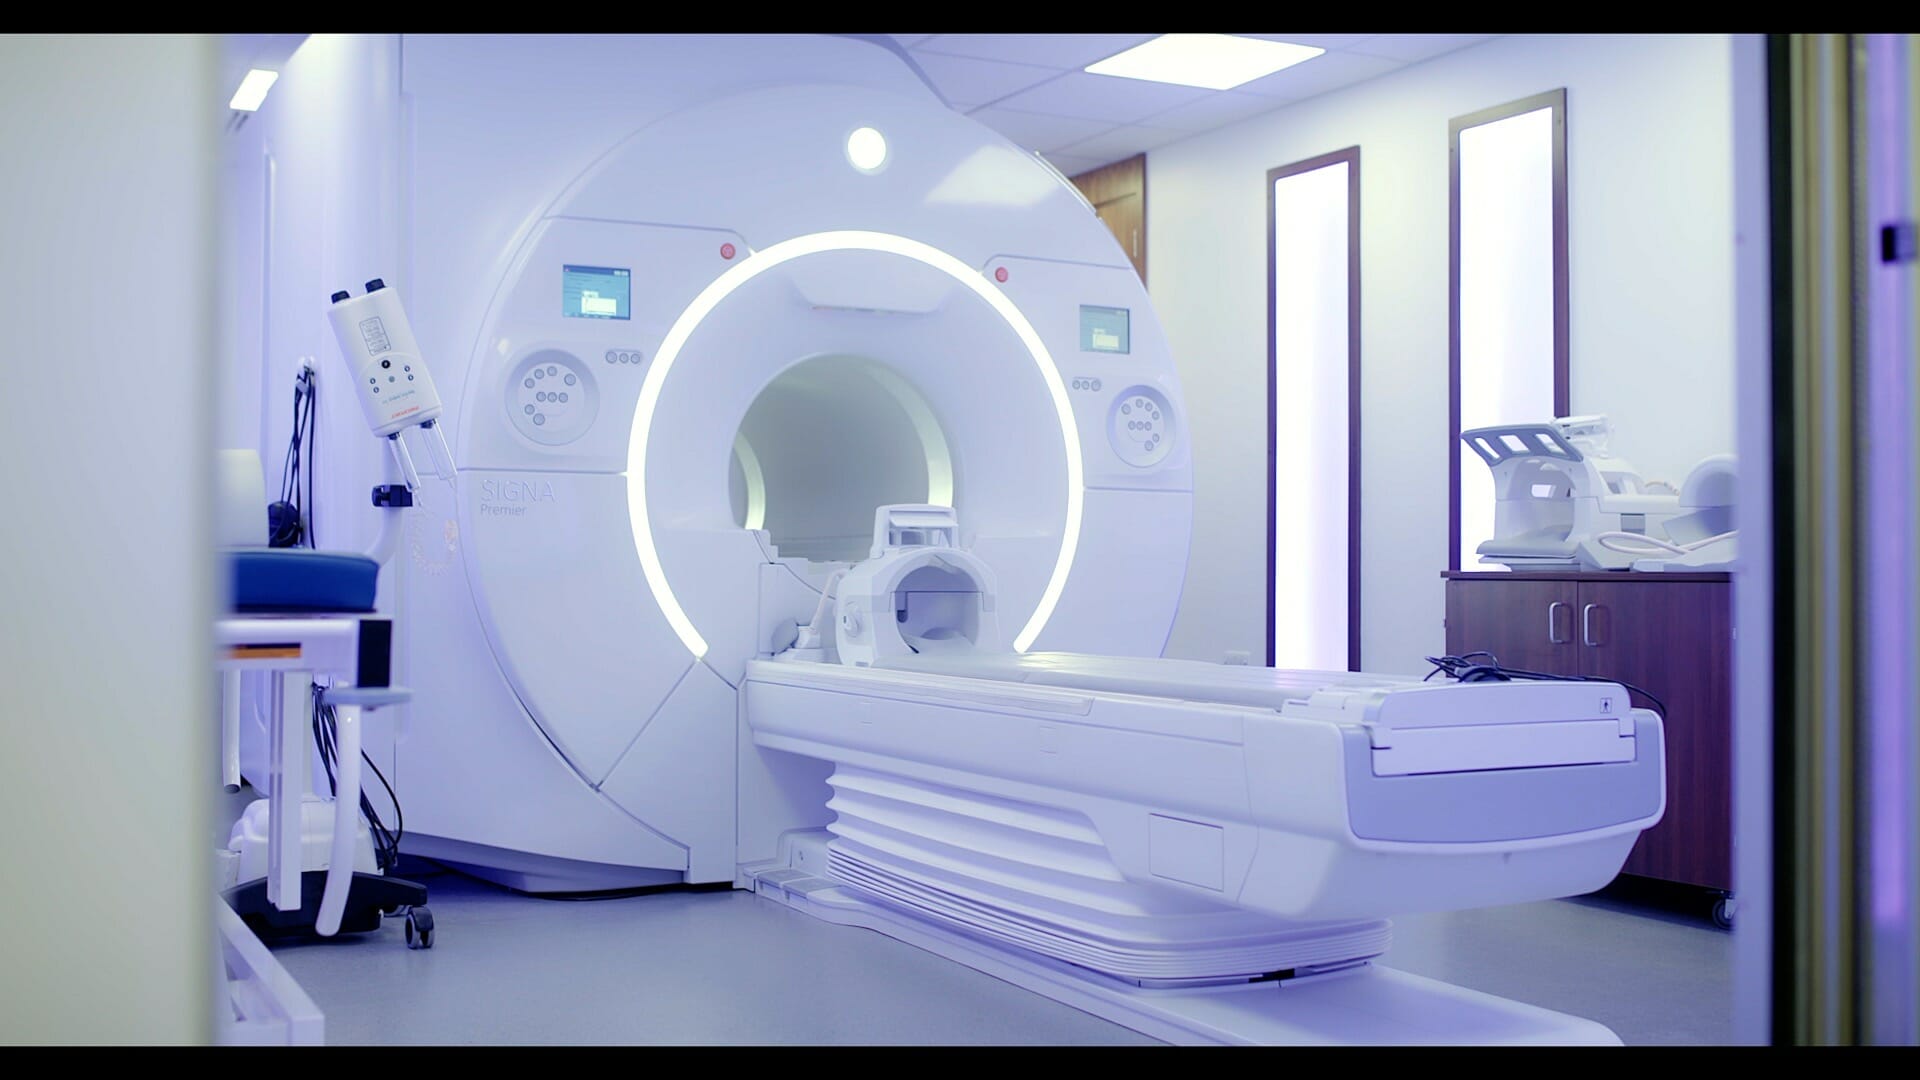 Queen_square_imaging_centre_MRI_scanner